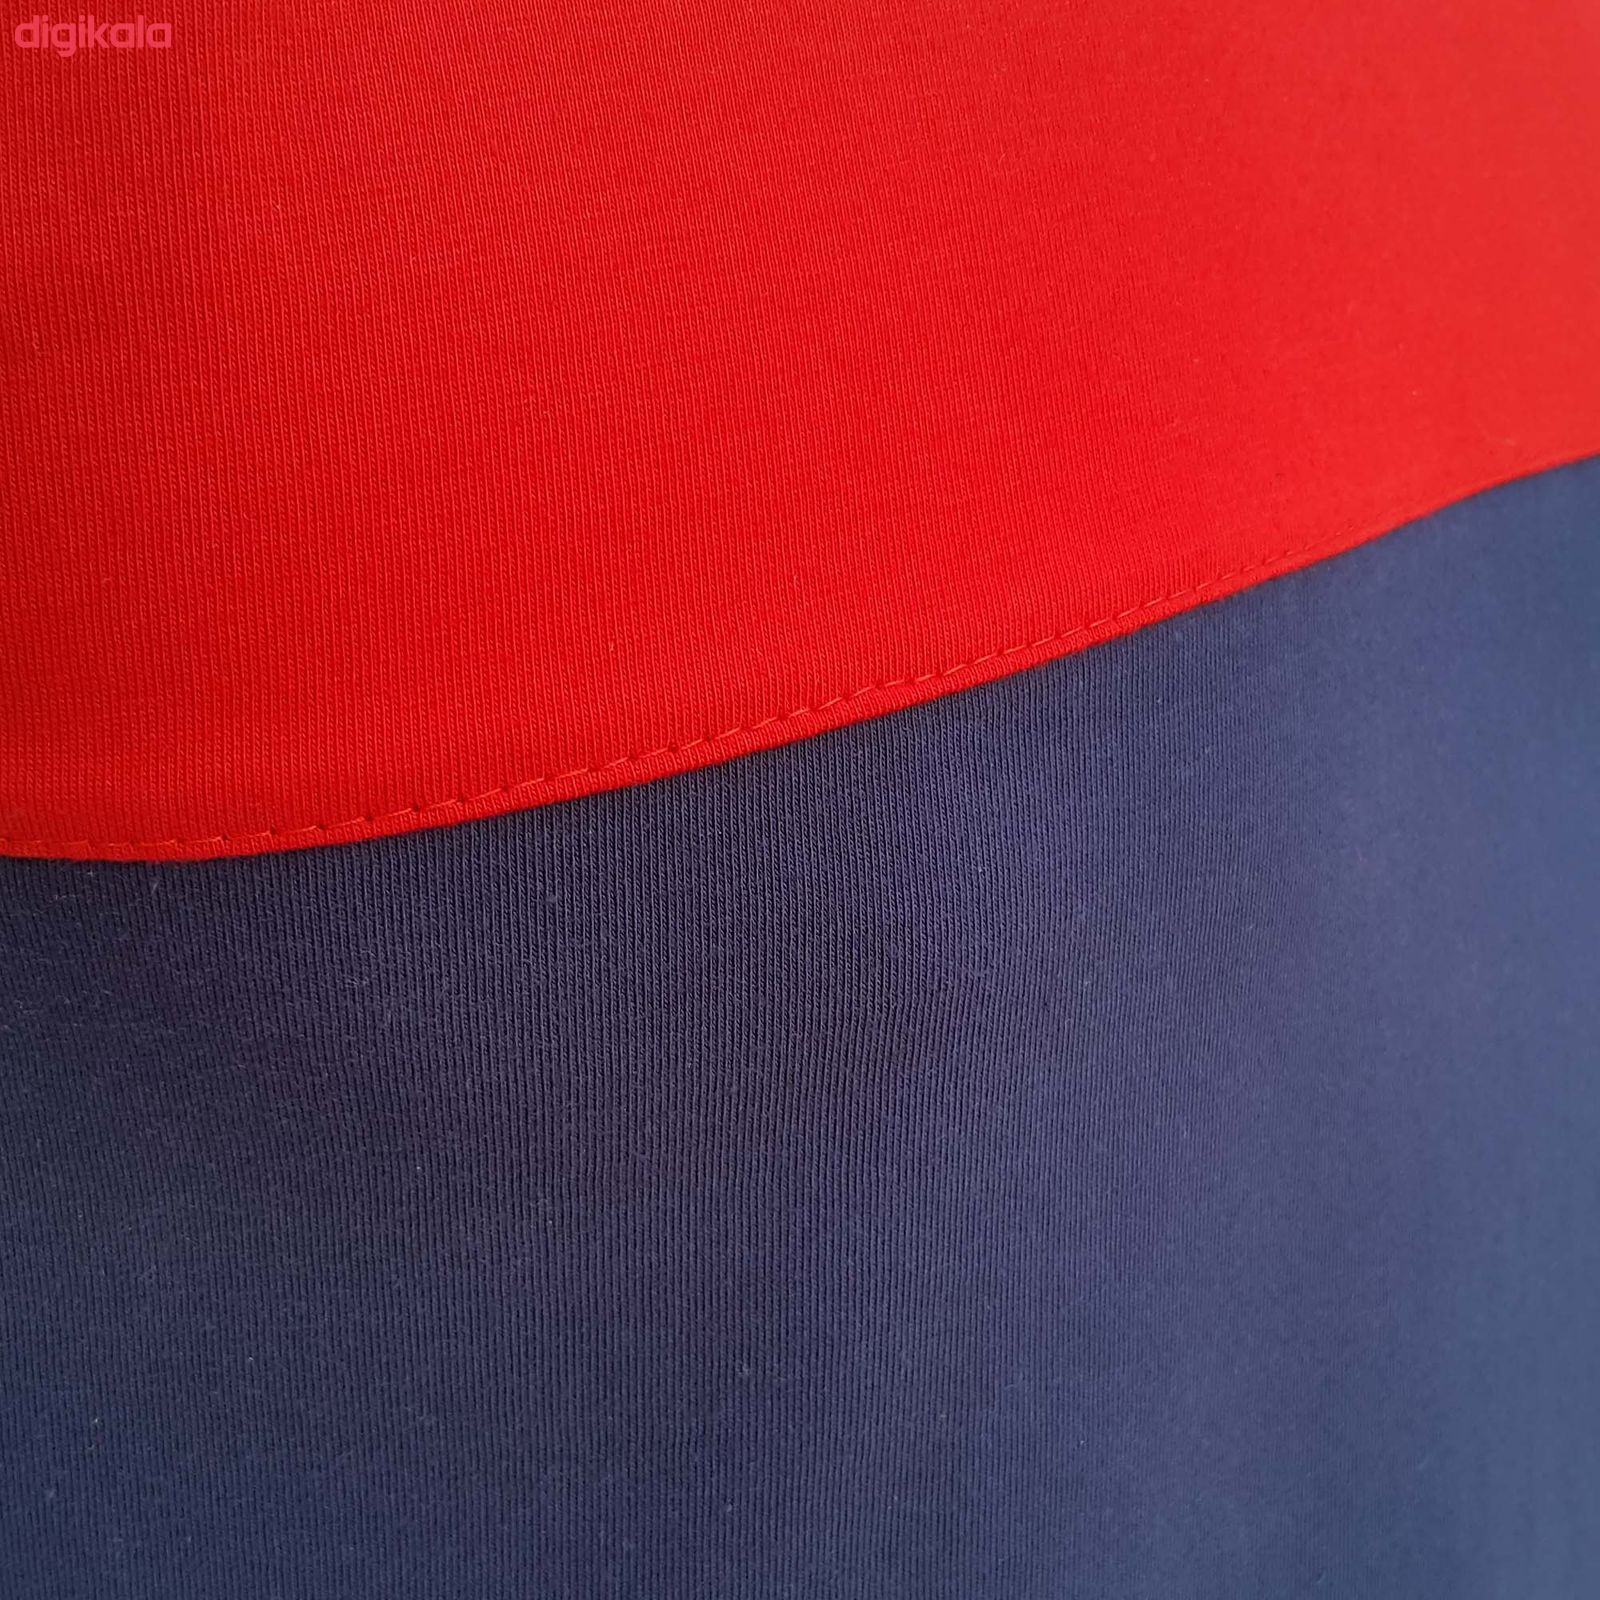  تی شرت آستین کوتاه مردانه طرح آژاکس کد A255G رنگ قرمز